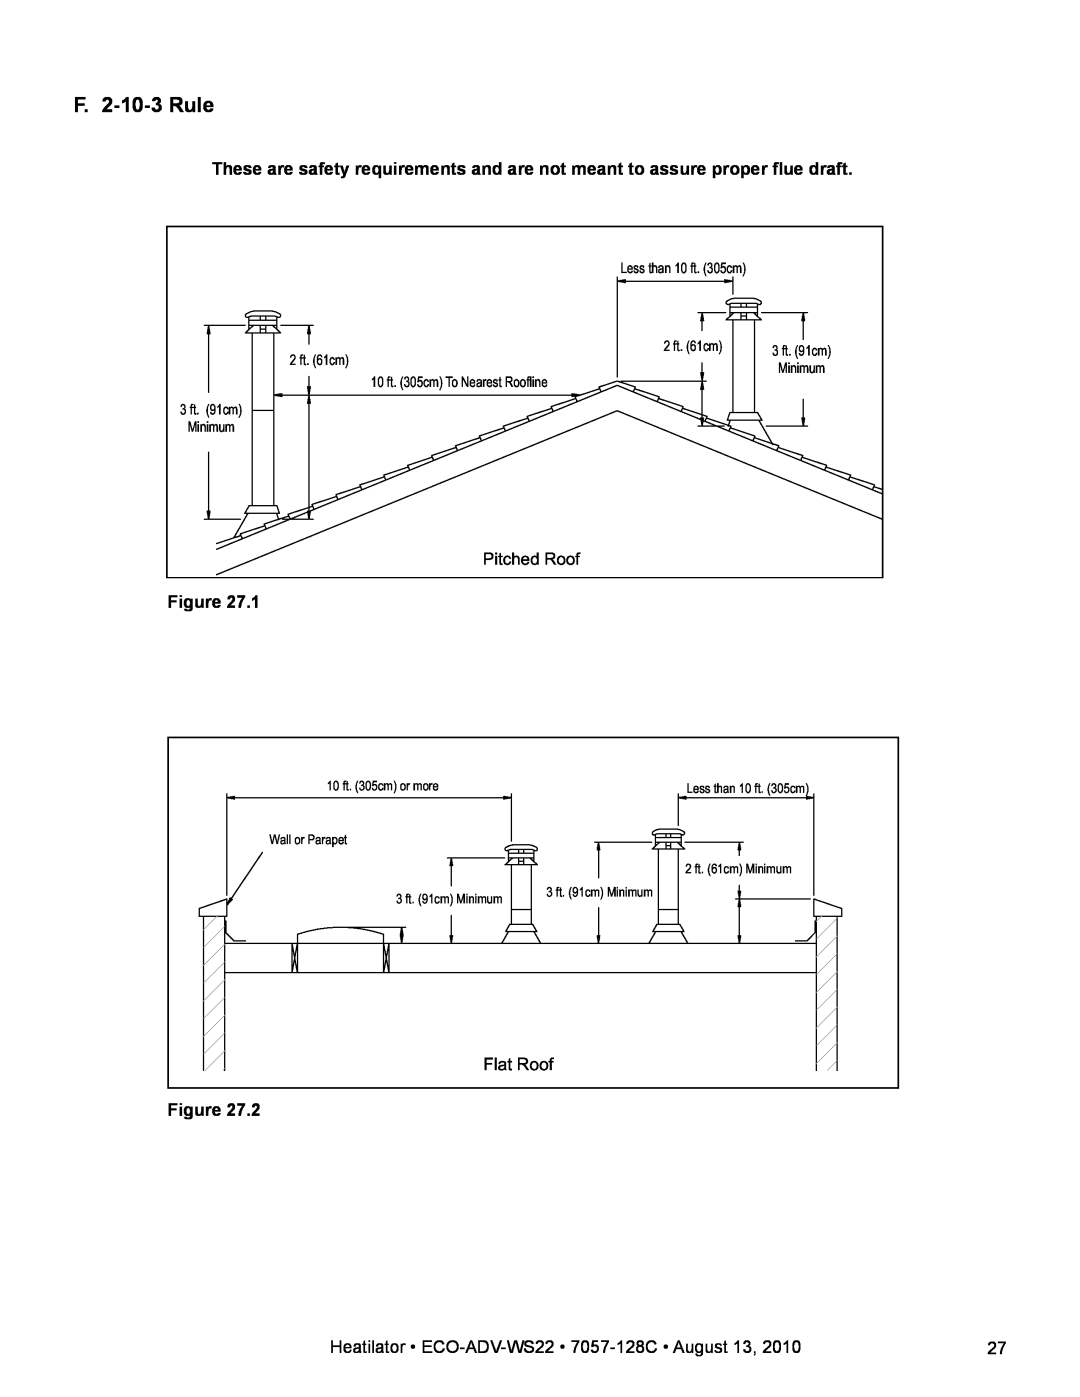 Heatiator ECO-ADV-WS22 warranty F. 2-10-3Rule, Flat Roof 